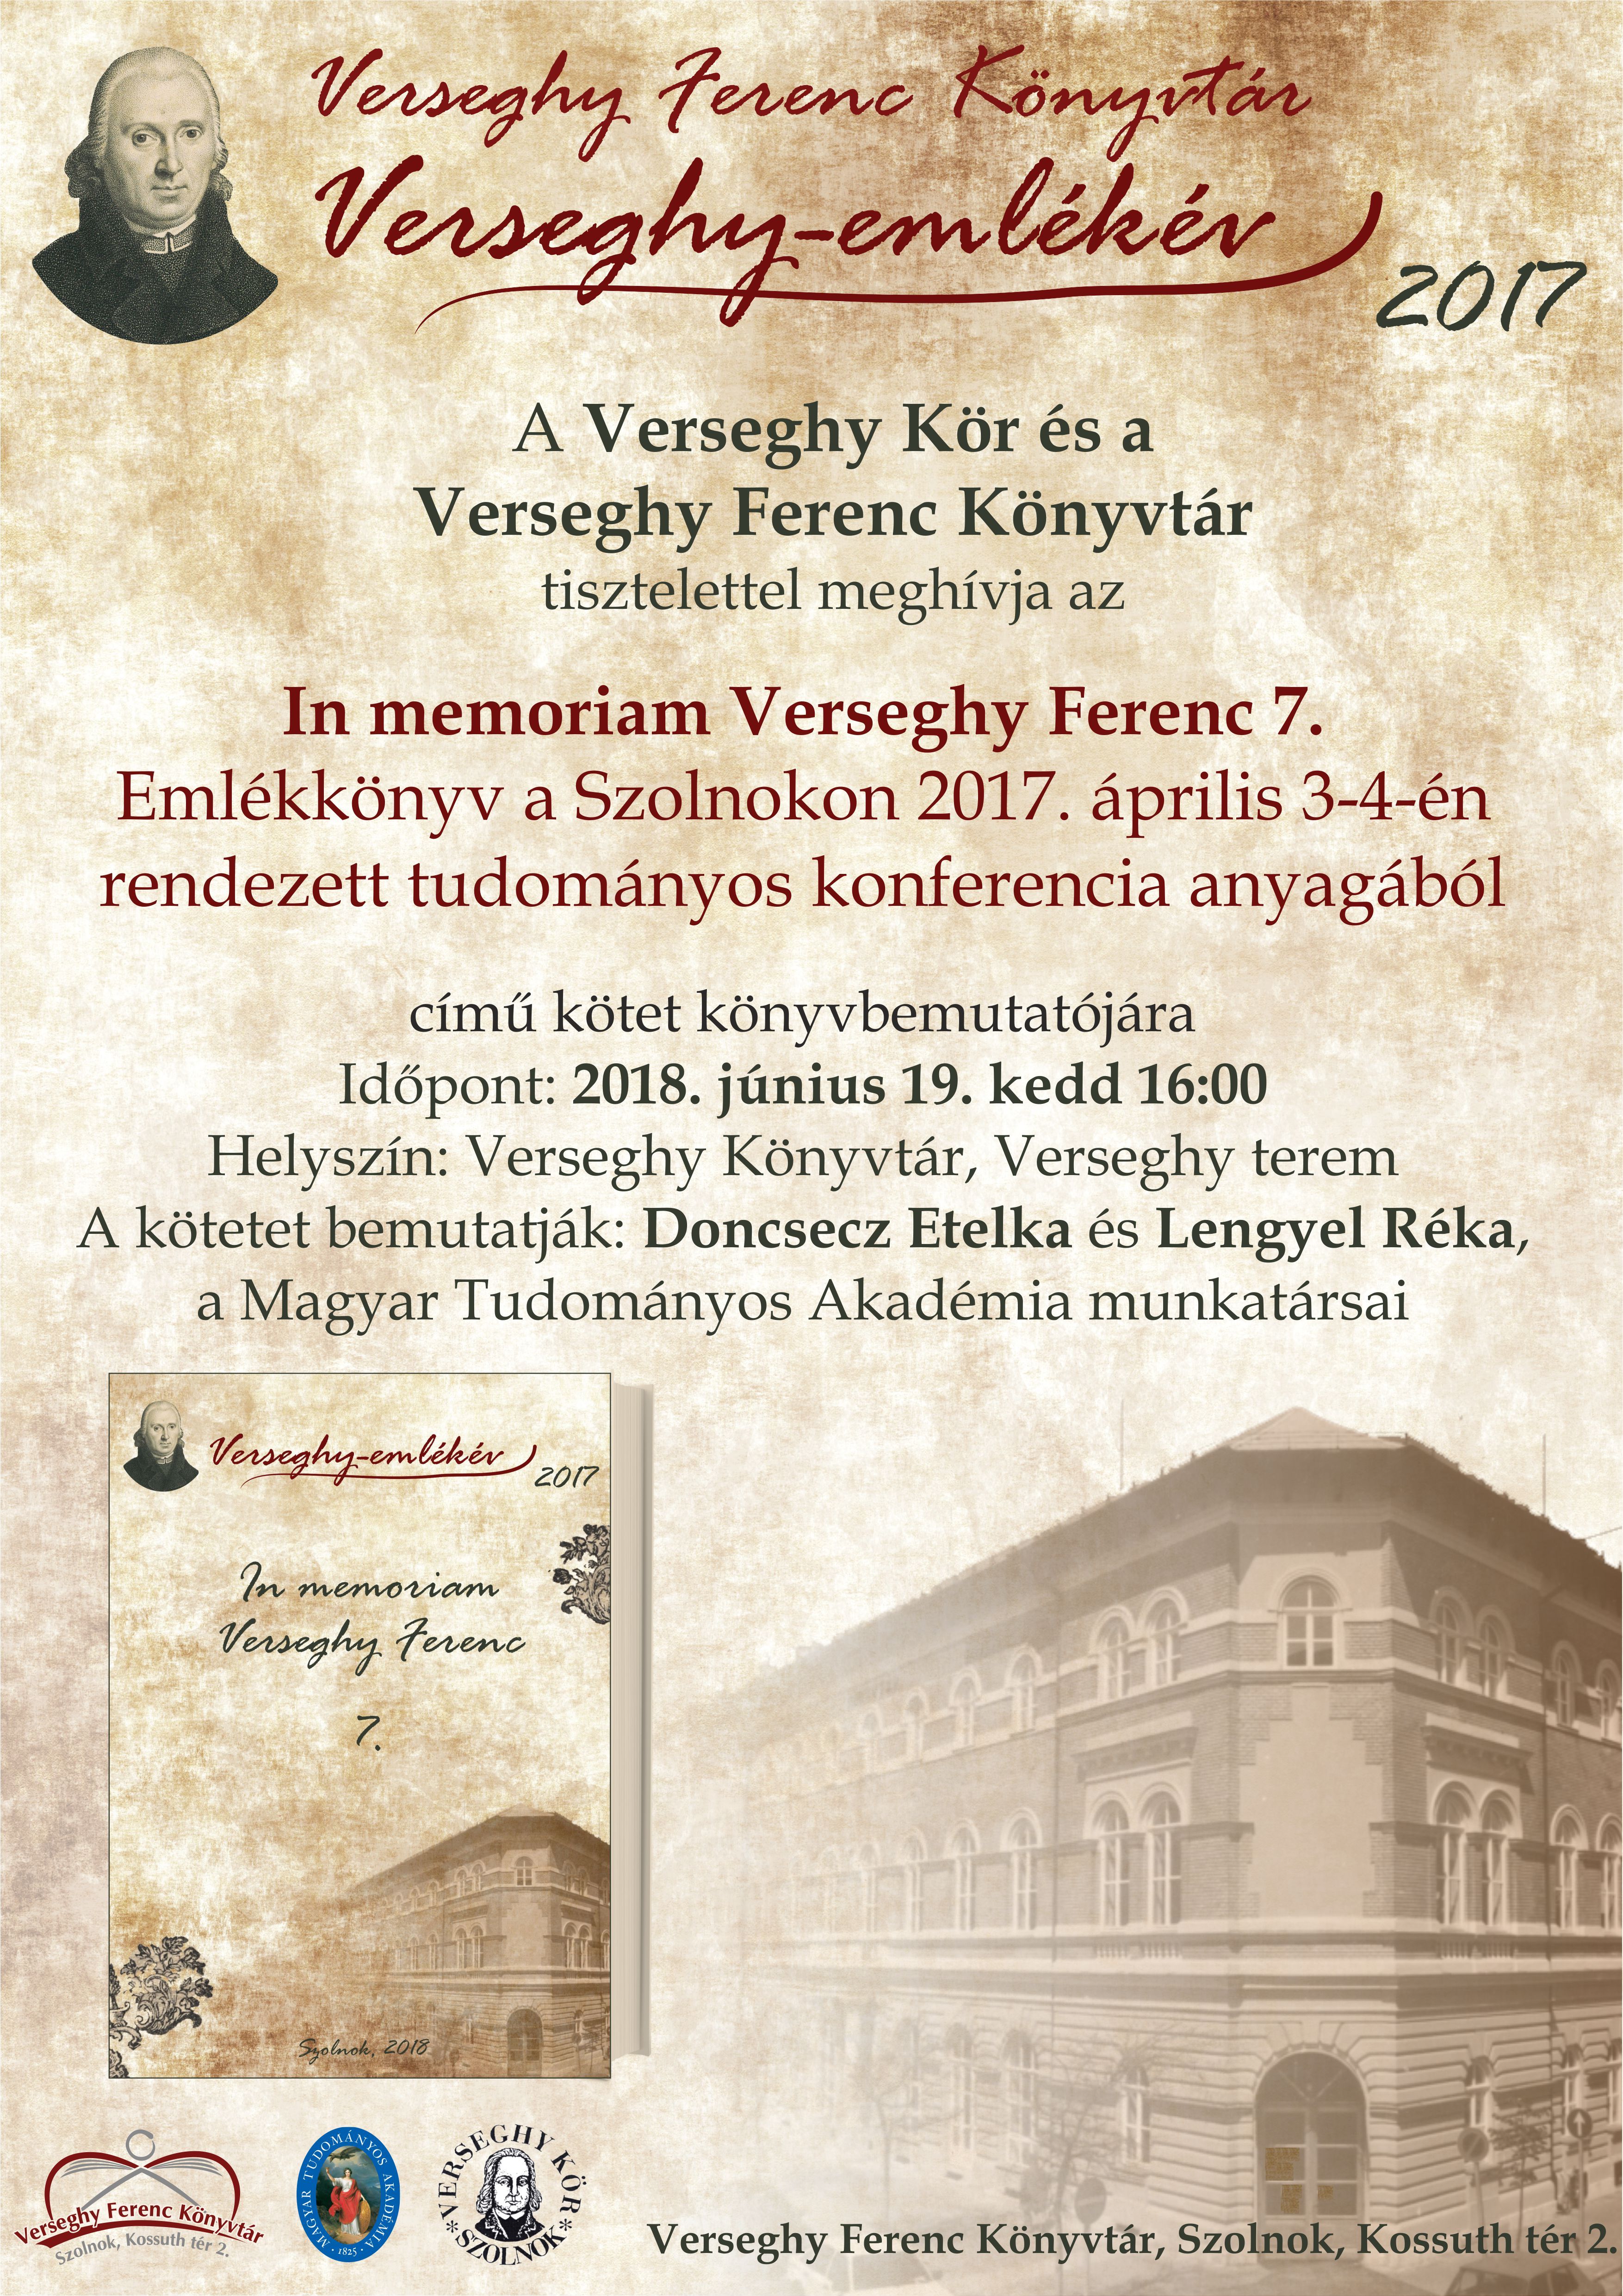 In memoriam Verseghy Ferenc – a konferencia anyagából készült emlékkönyv